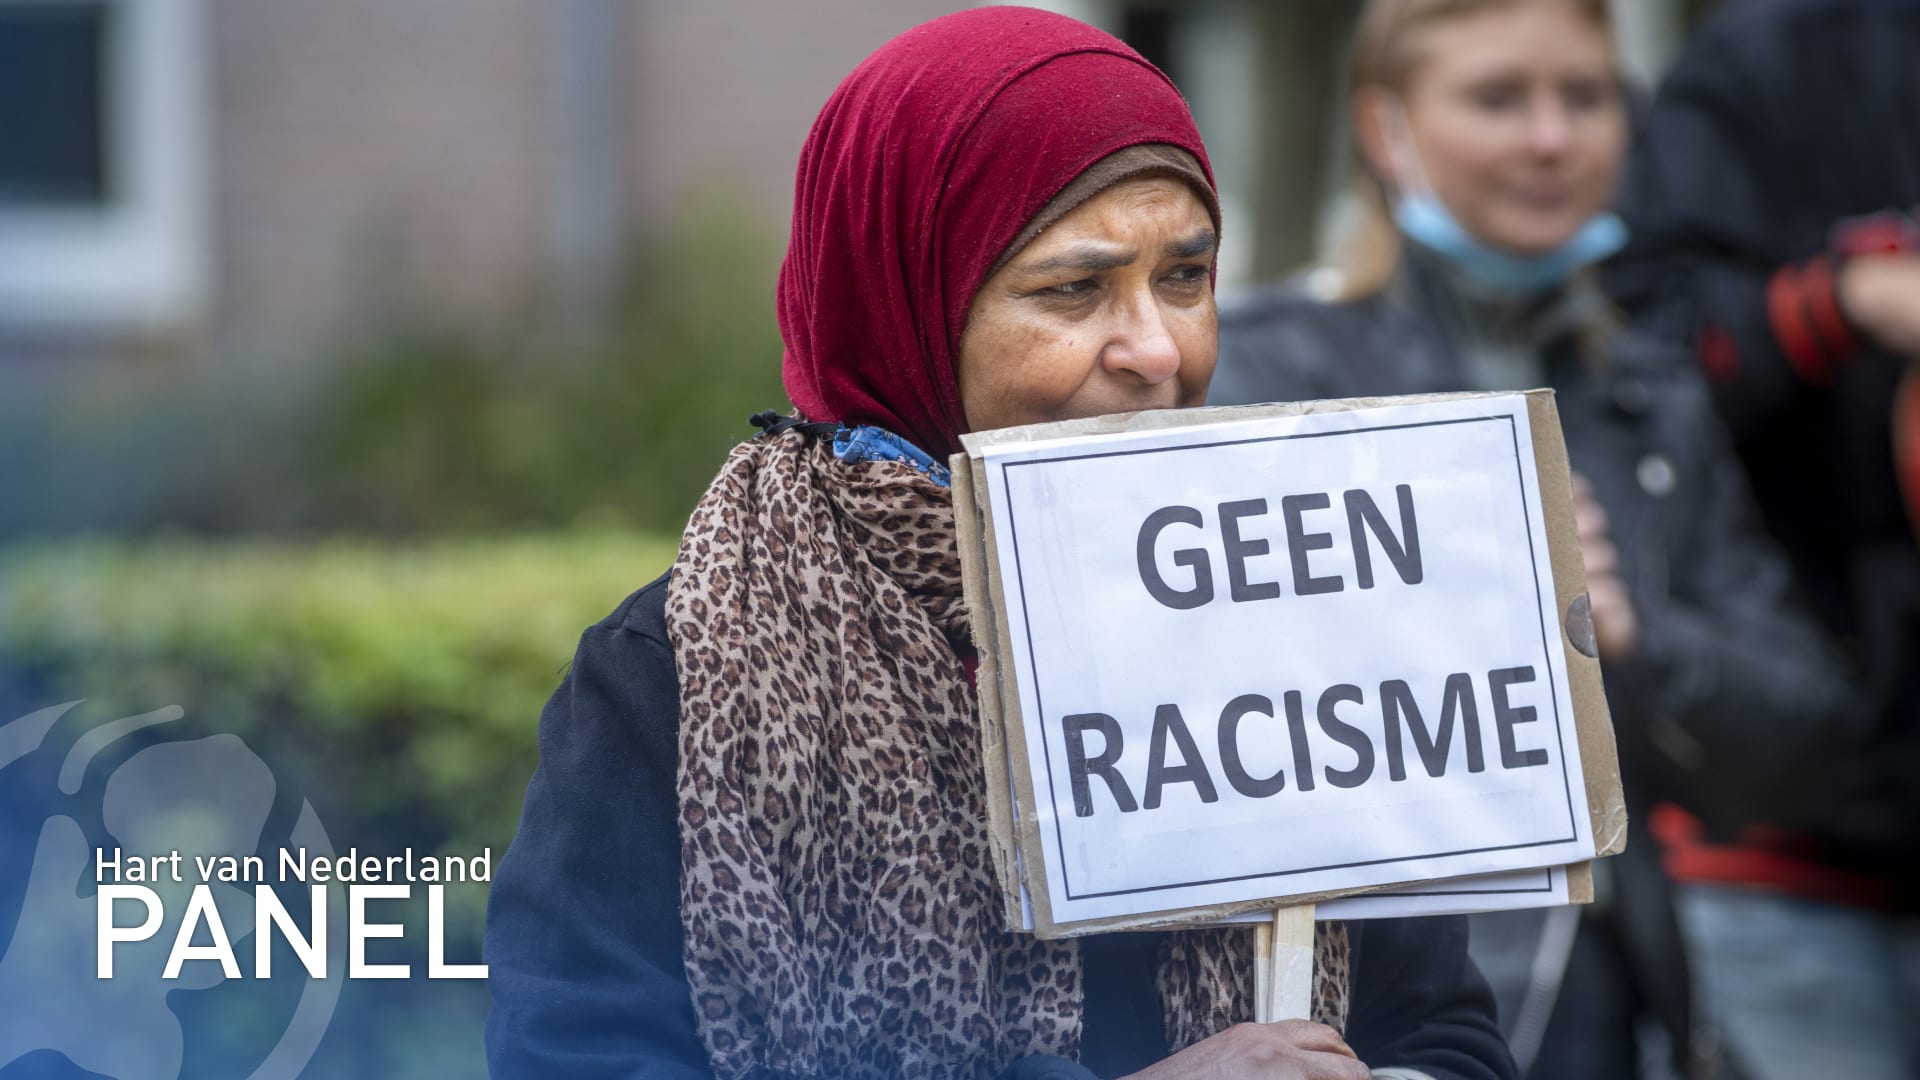 Panel: racisme in Nederland diepgeworteld, velen zien geen probleem